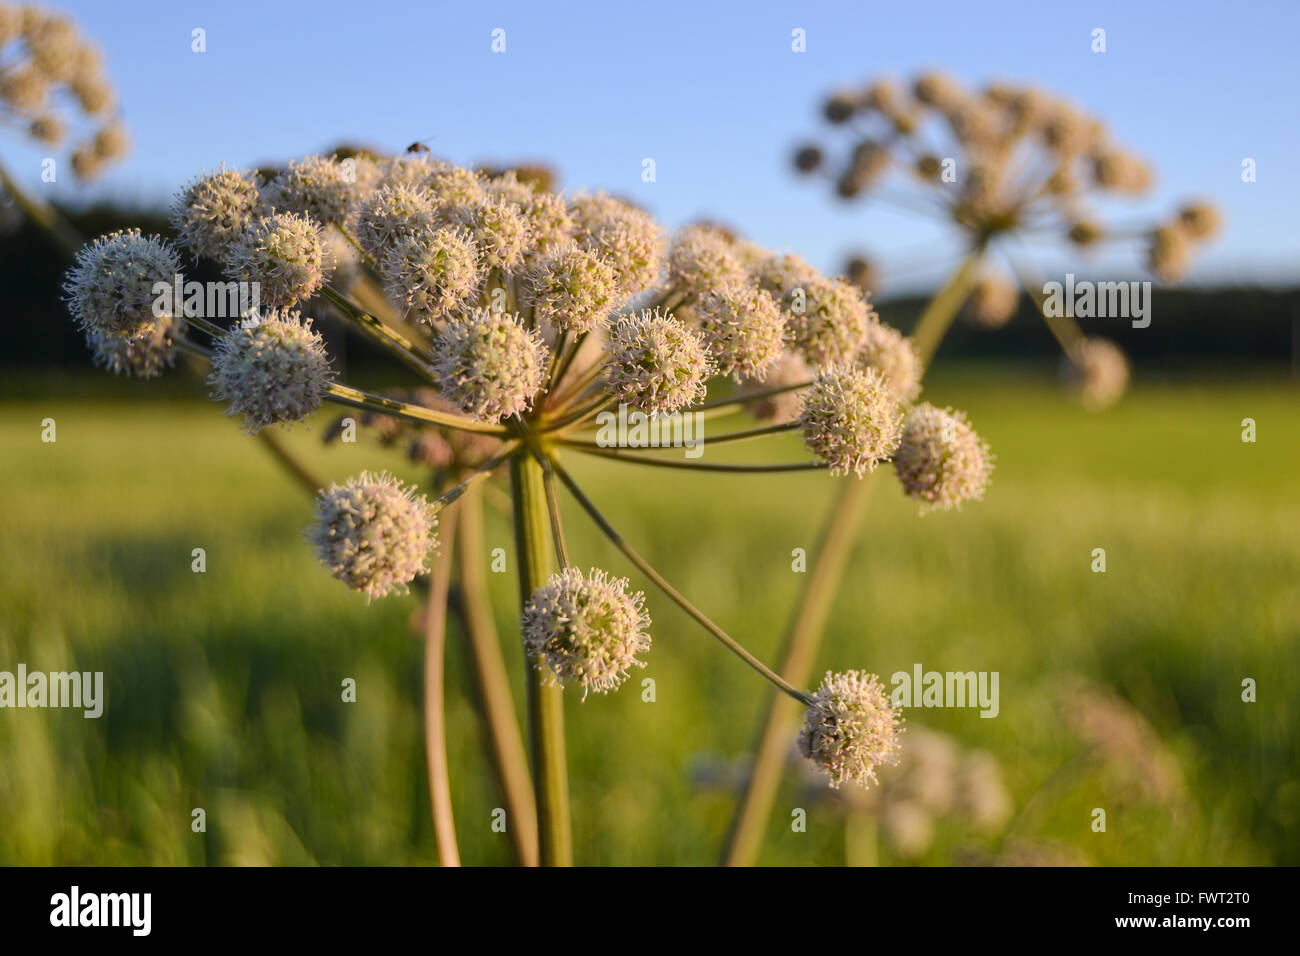 Angelica in fiore immagini e fotografie stock ad alta risoluzione - Alamy